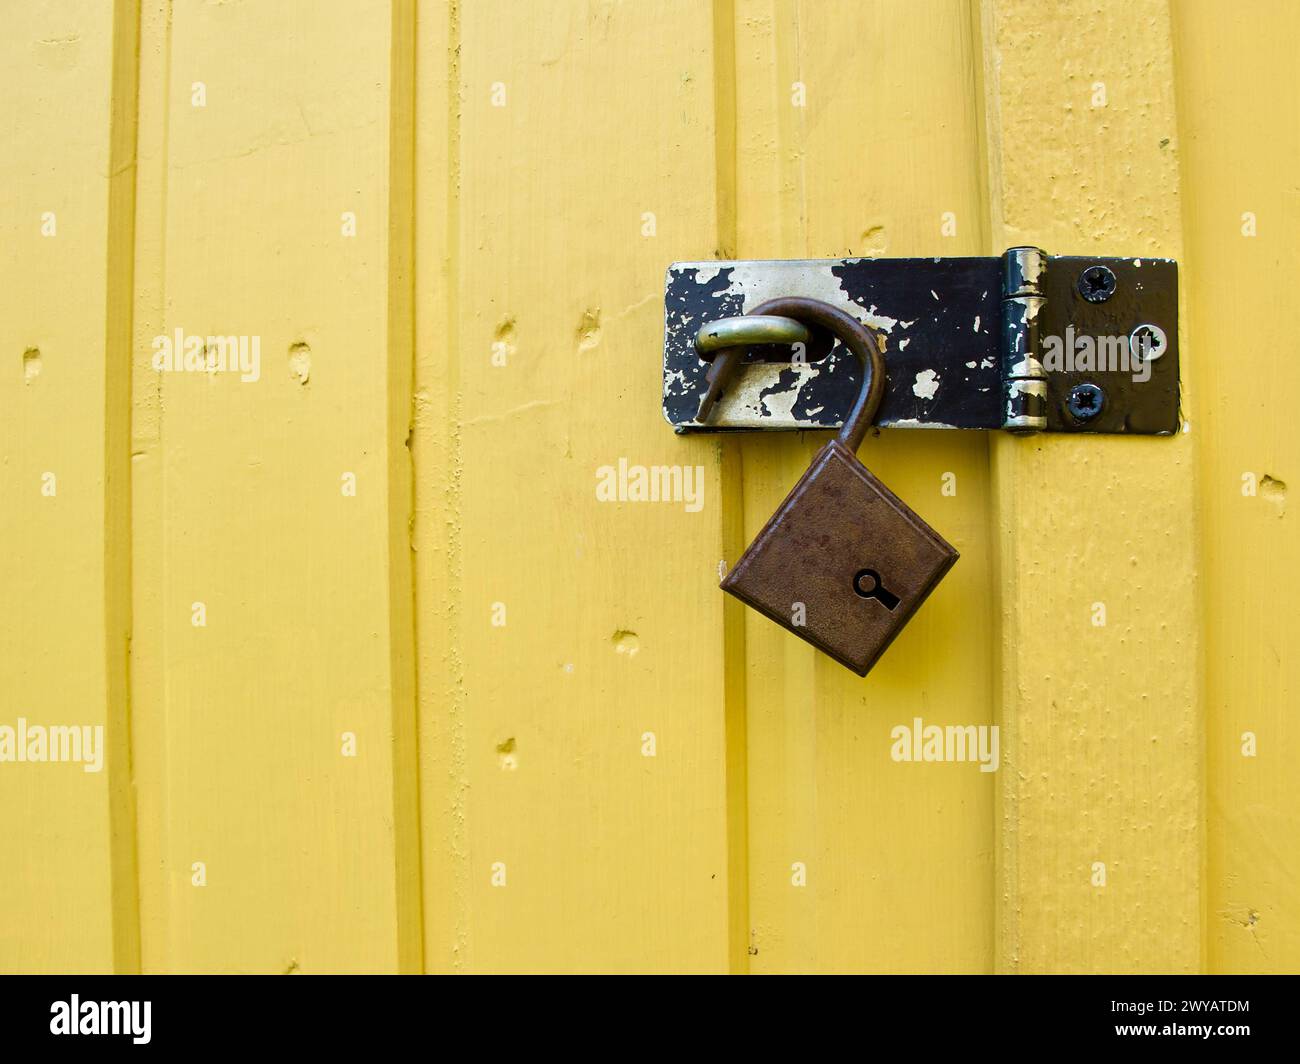 Ein altes und rostiges, nicht verschlossenes Vorhängeschloss hängt im abgenutzten Bracken einer gelben Holztür an einem Werkzeugschuppen im Garten. Stockfoto